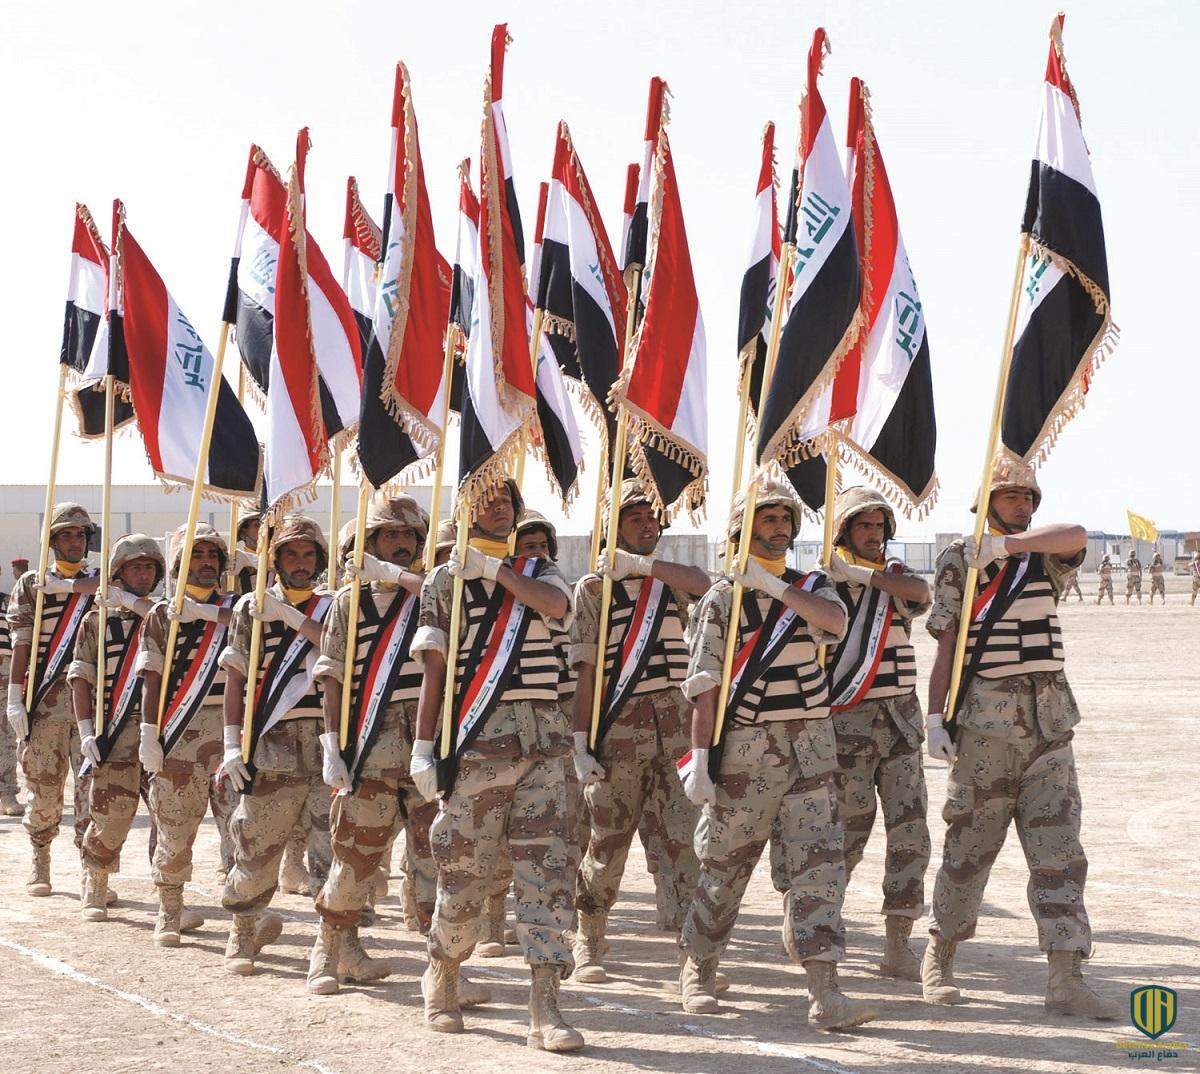 قوات عراقية في إستعراض عسكري